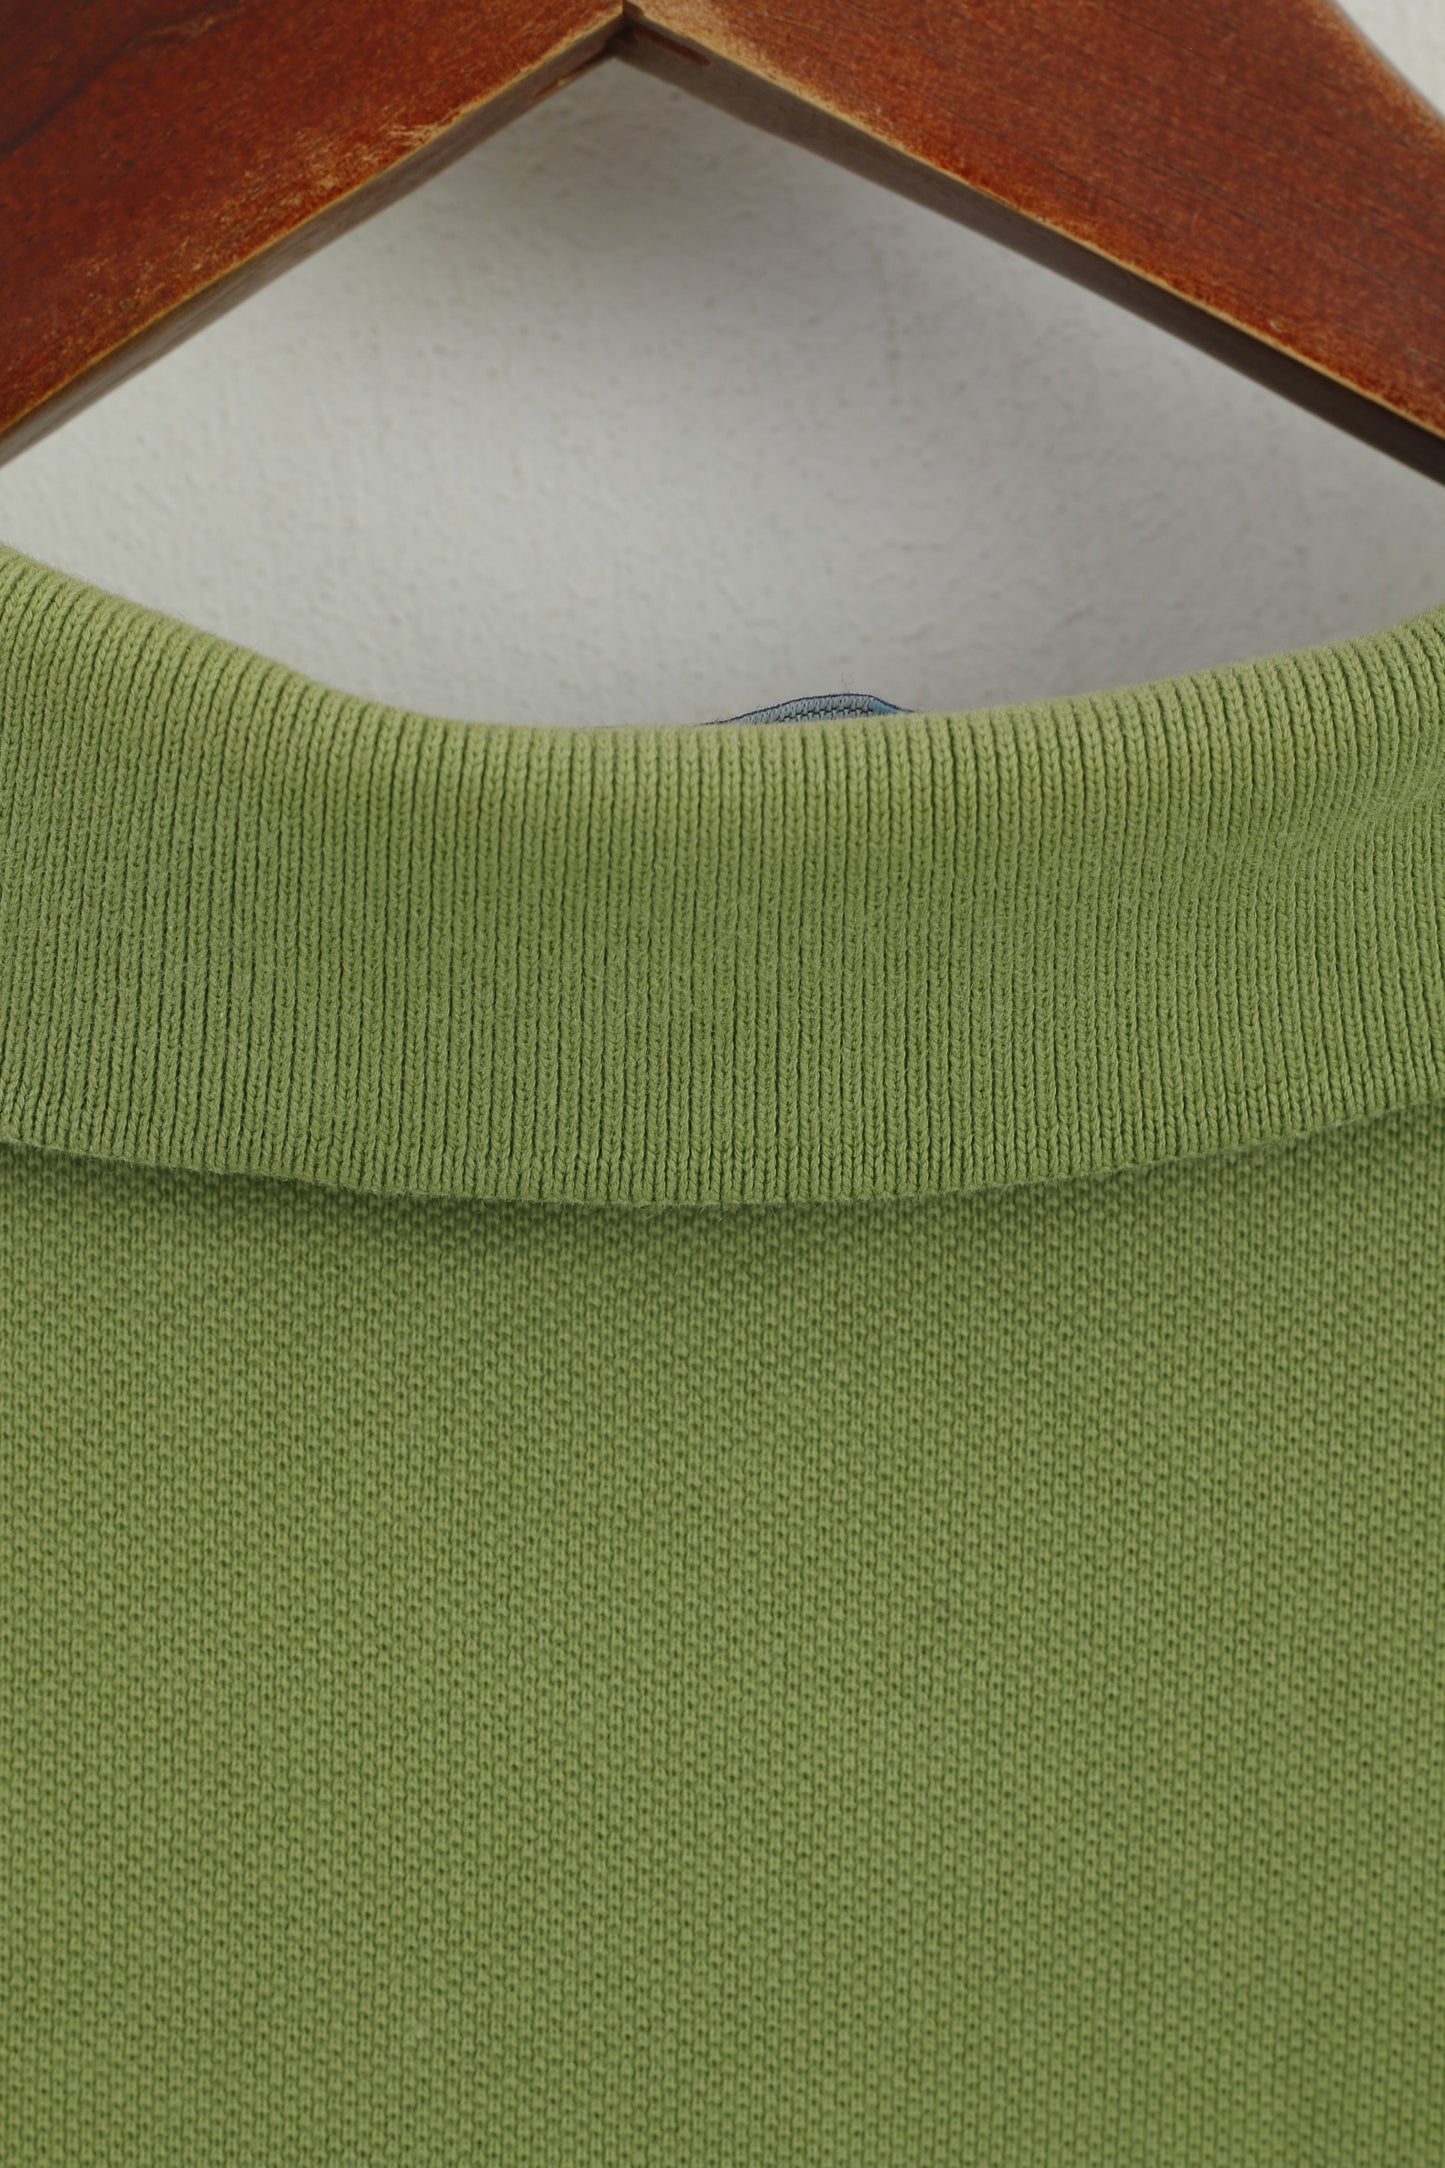 Fred Perry Hommes XS Polo Vert Coton Piqué Manches Courtes Haut Uni